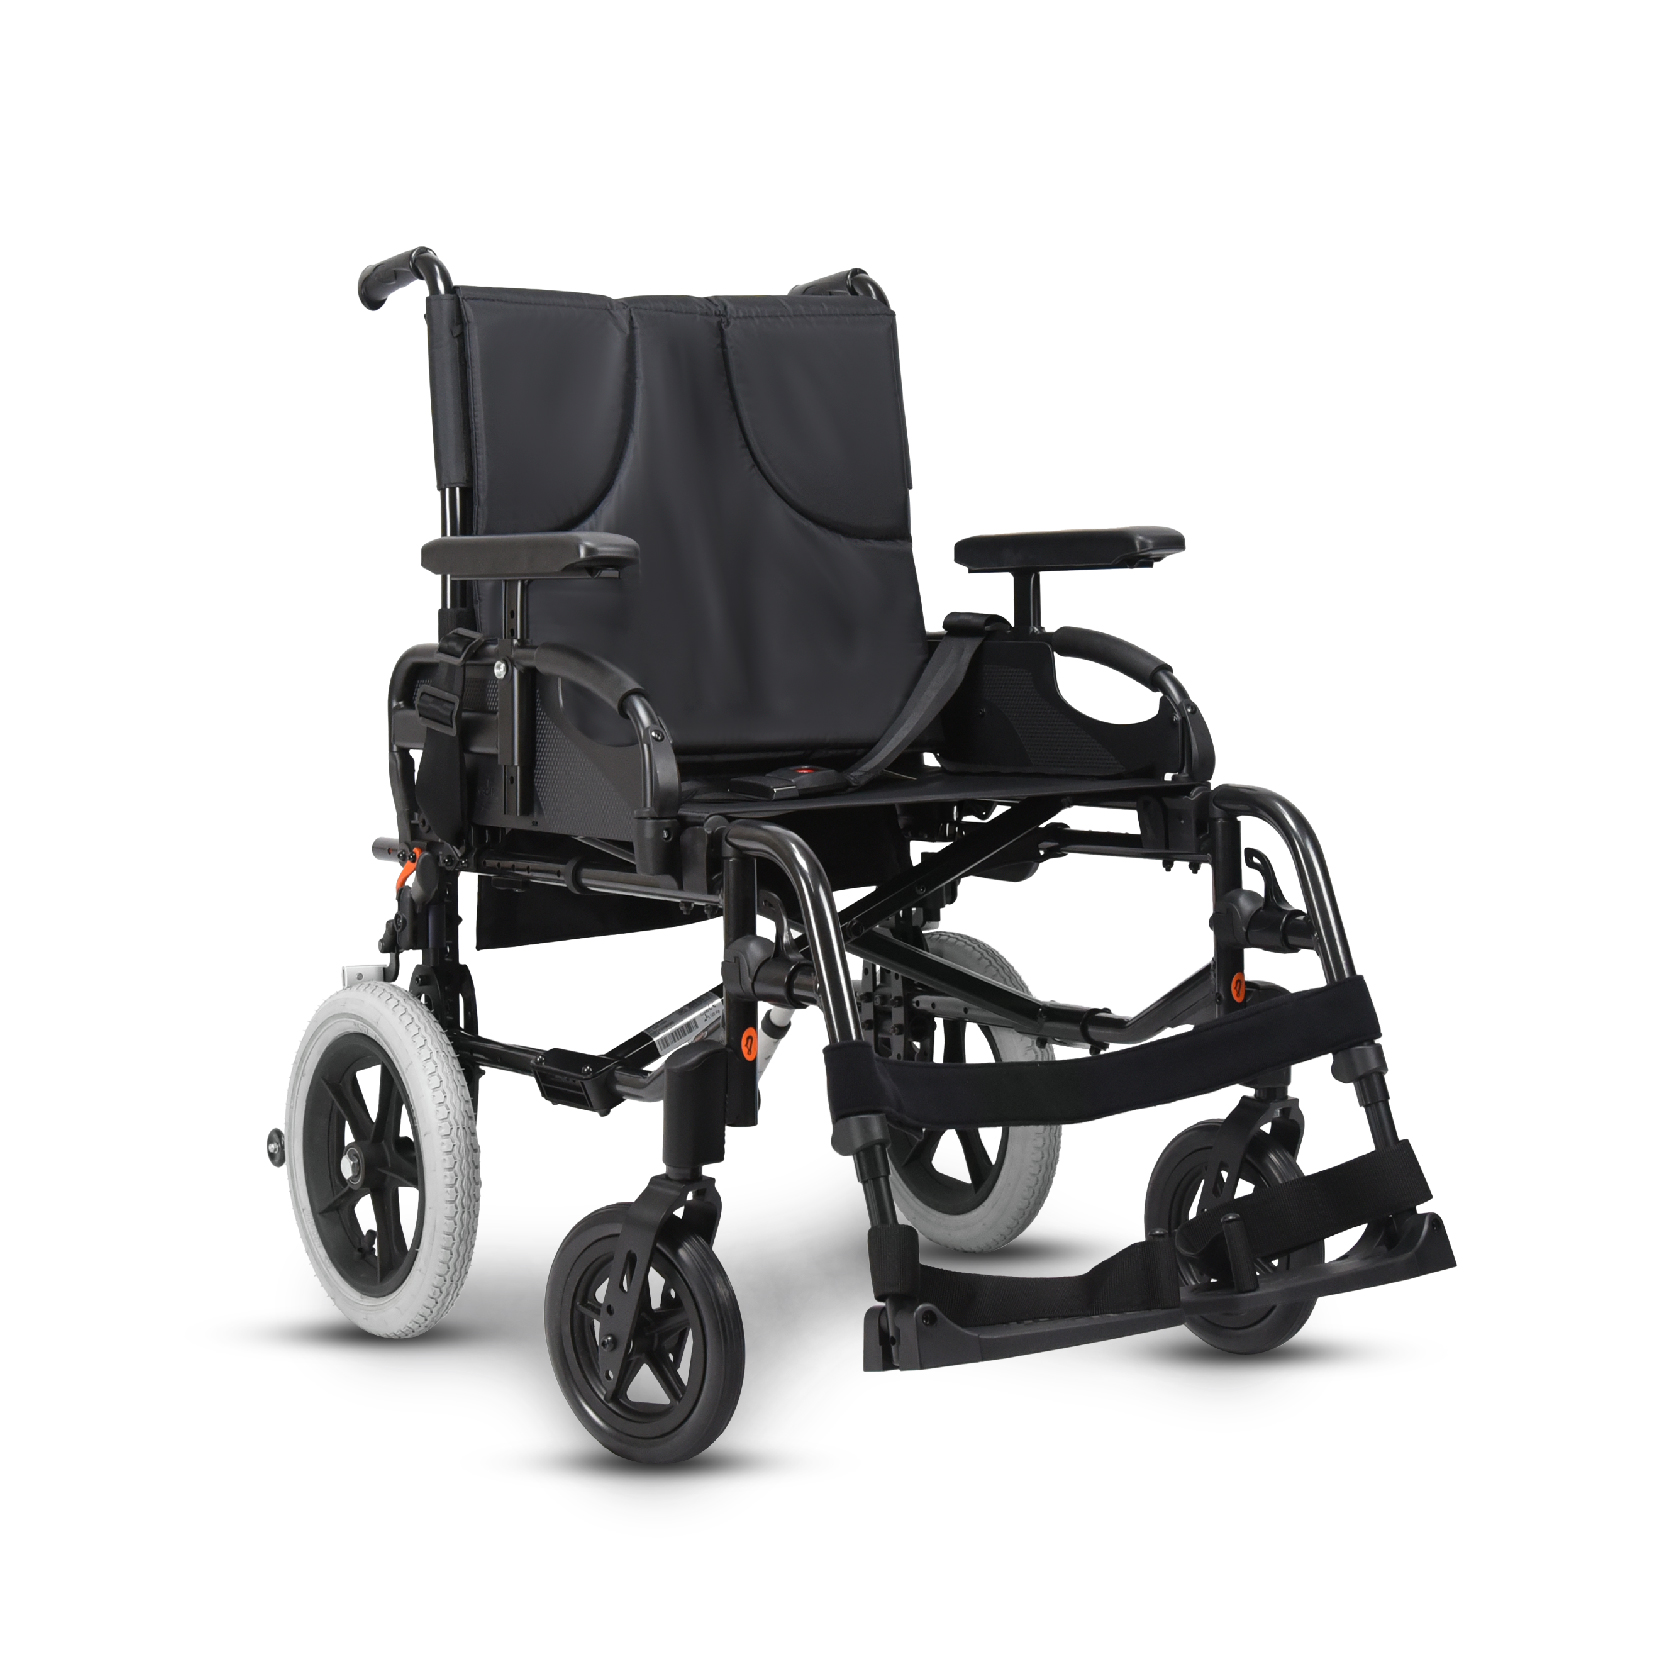 วีลแชร์ผู้สูงอายุ รุ่นเบาะกว้างพิเศษ พับได้ ยี่ห้อ Invacare รุ่น Action 3NG (Extra-wide Manual Wheelchair) รับประกัน 2 ปี